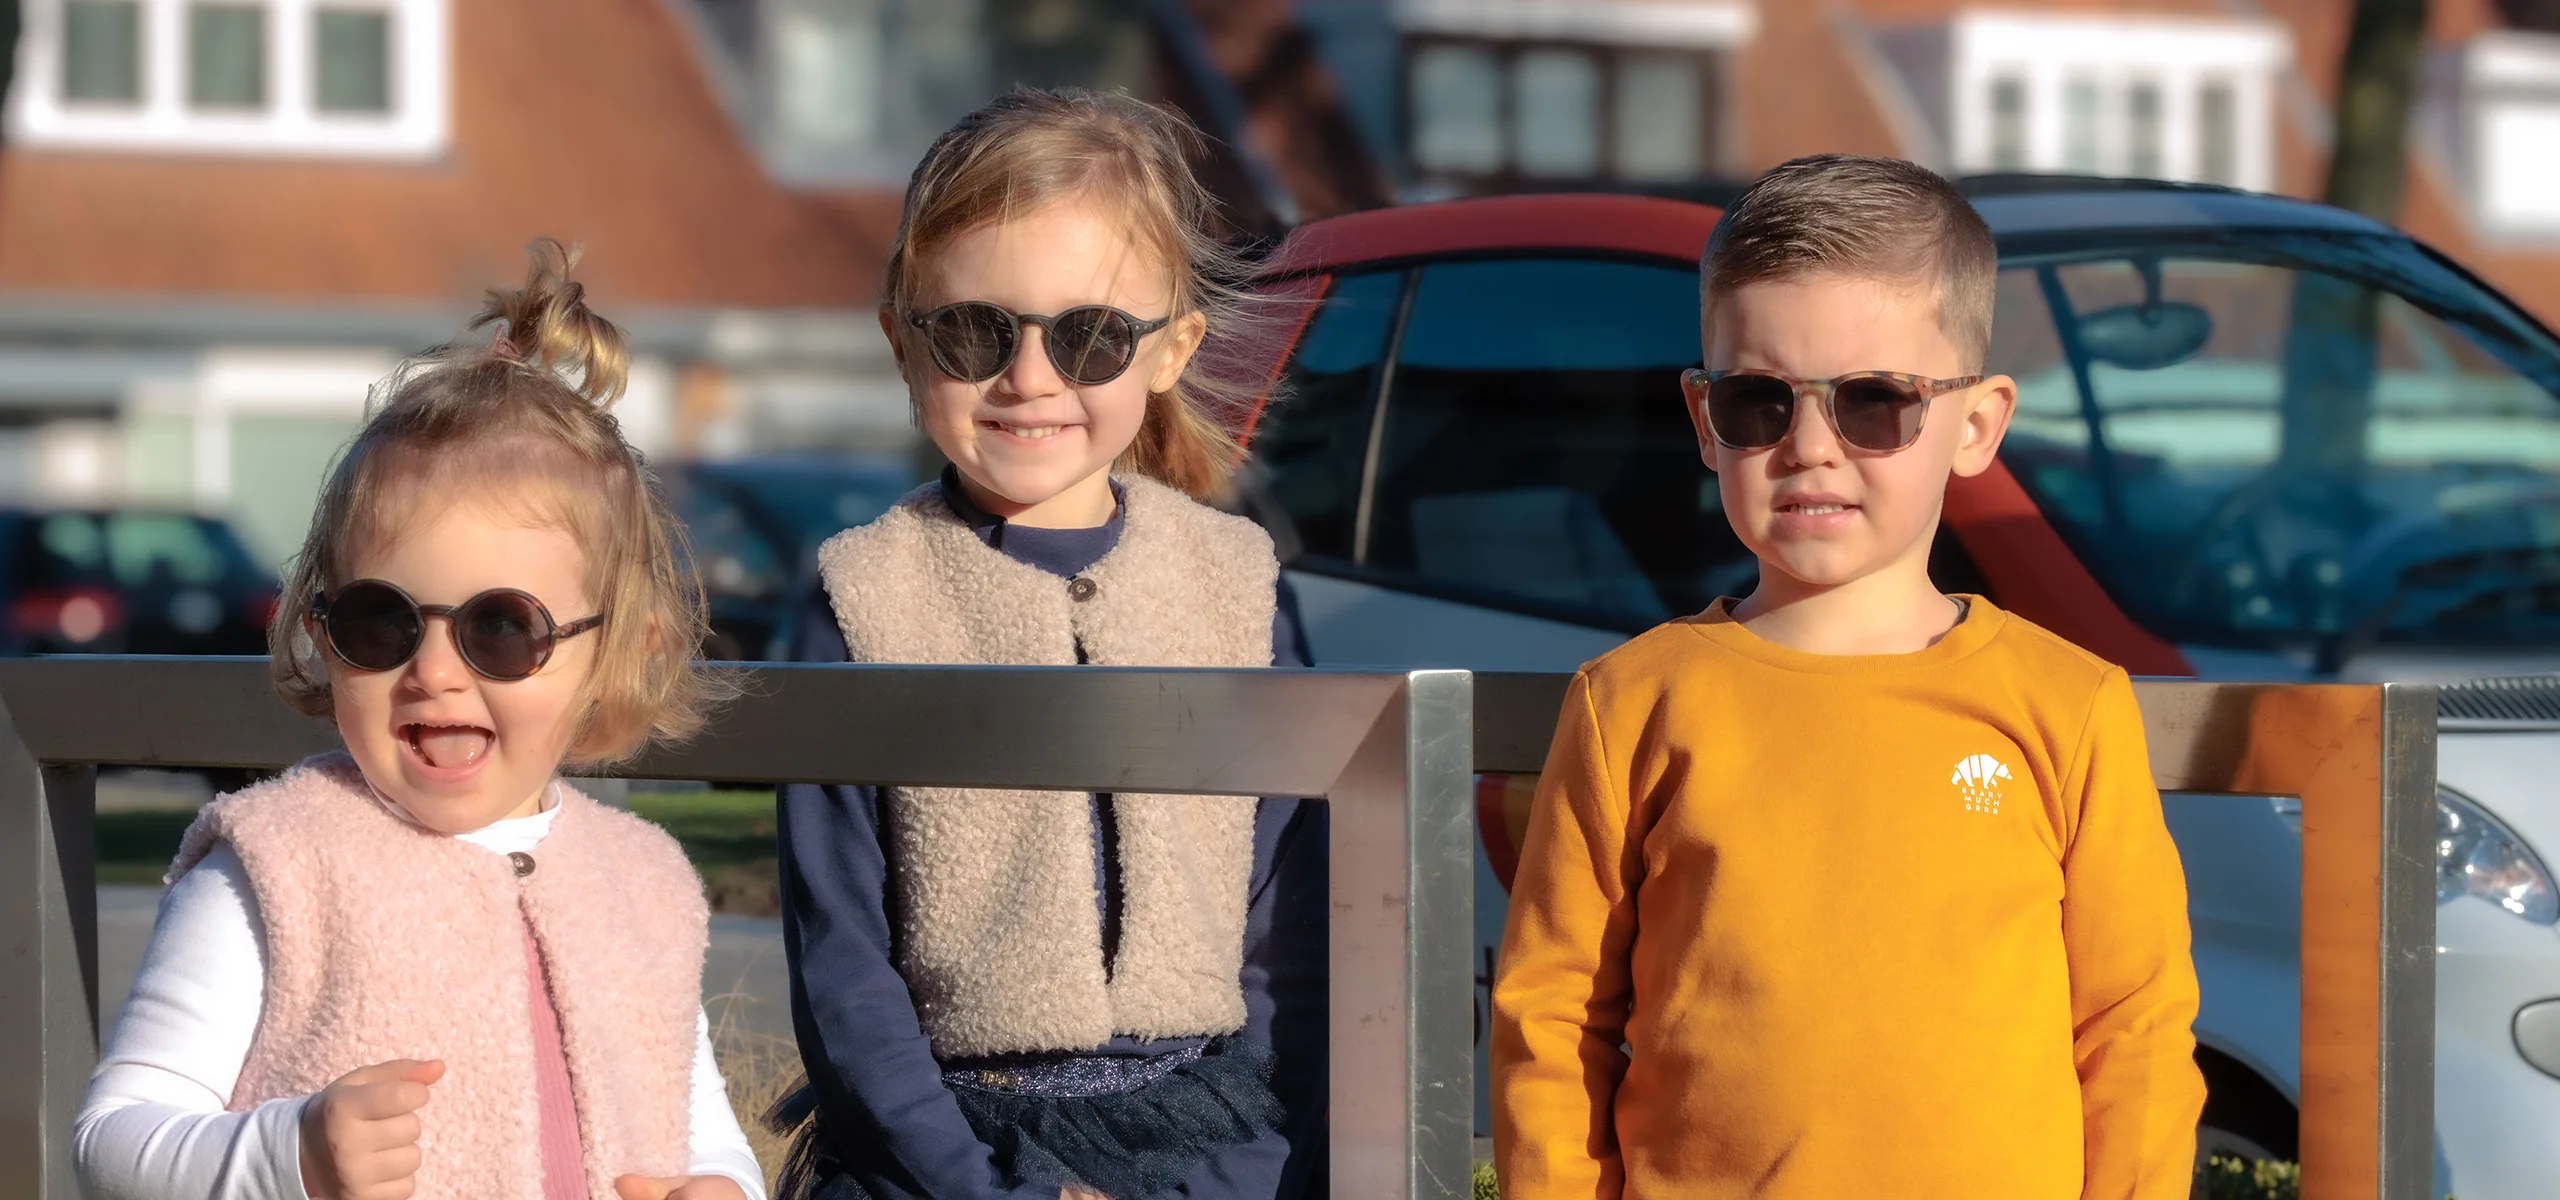 Kinderoptiek regio Brugge - Beter zicht voor uw kind